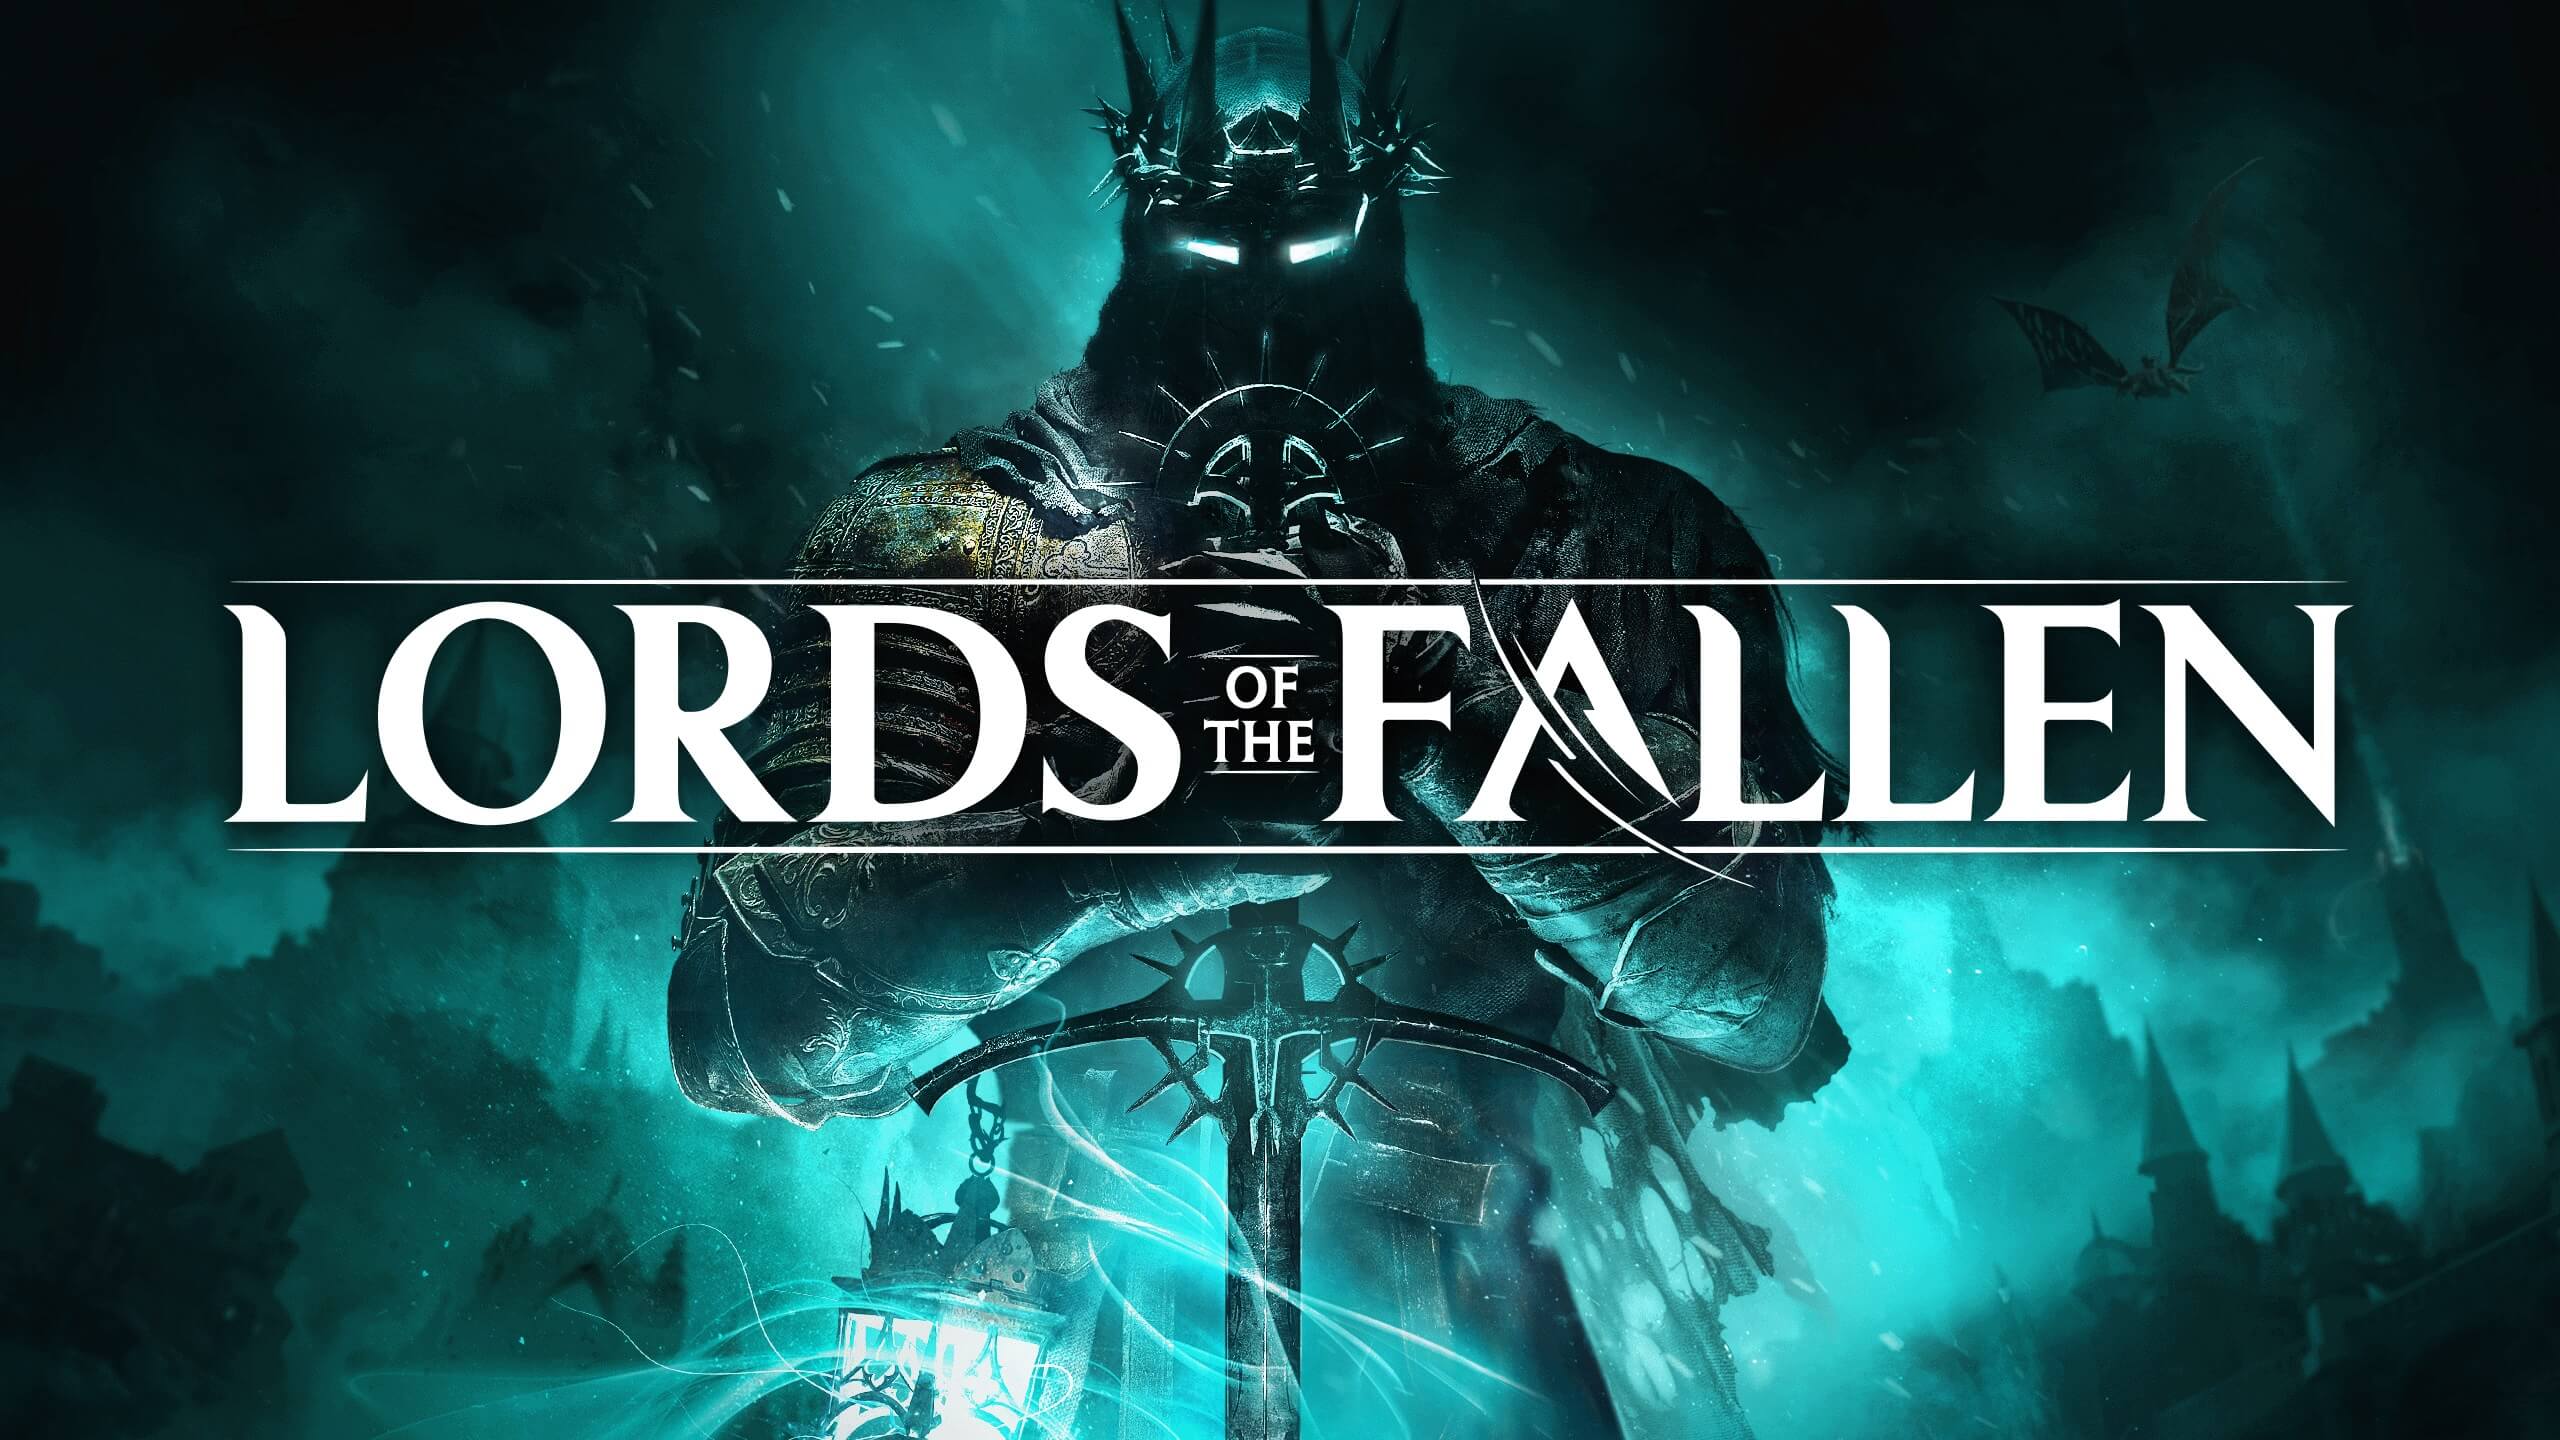 Nowy zwiastun gry action-RPG Lords of the Fallen koncentruje się na różnorodności wrogów, z którymi gracze będą musieli się zmierzyć w świecie żywych i umarłych